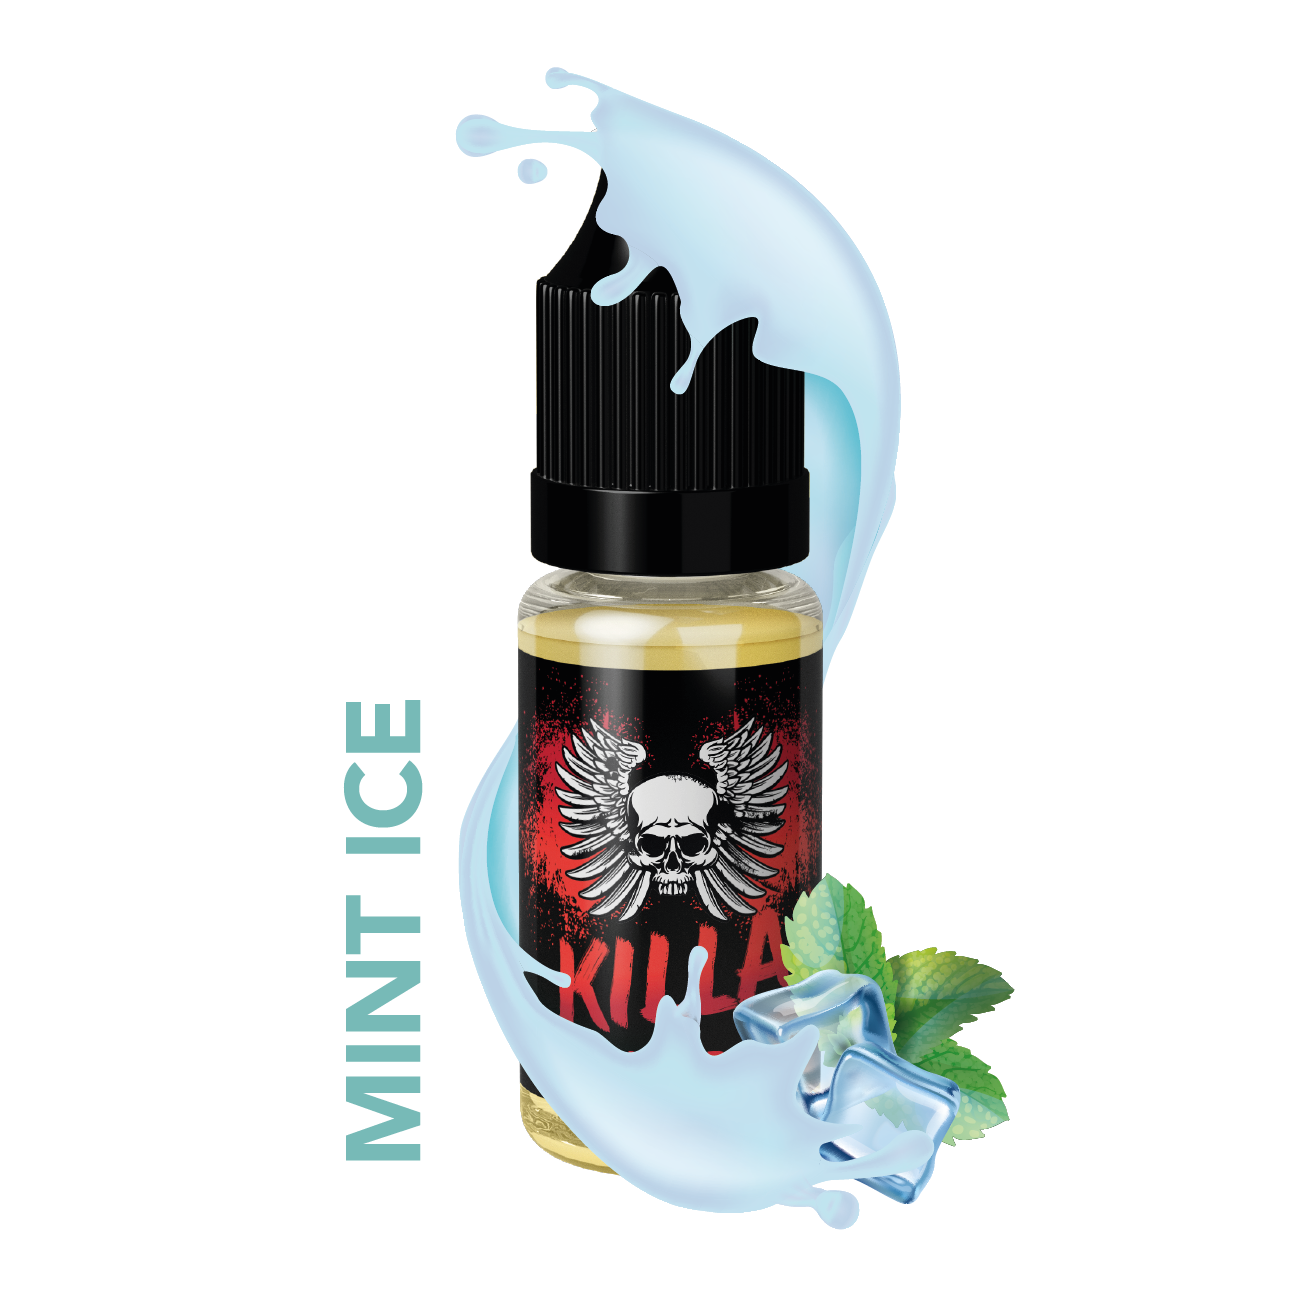 Killa Switch Mint Ice E-liquidimage